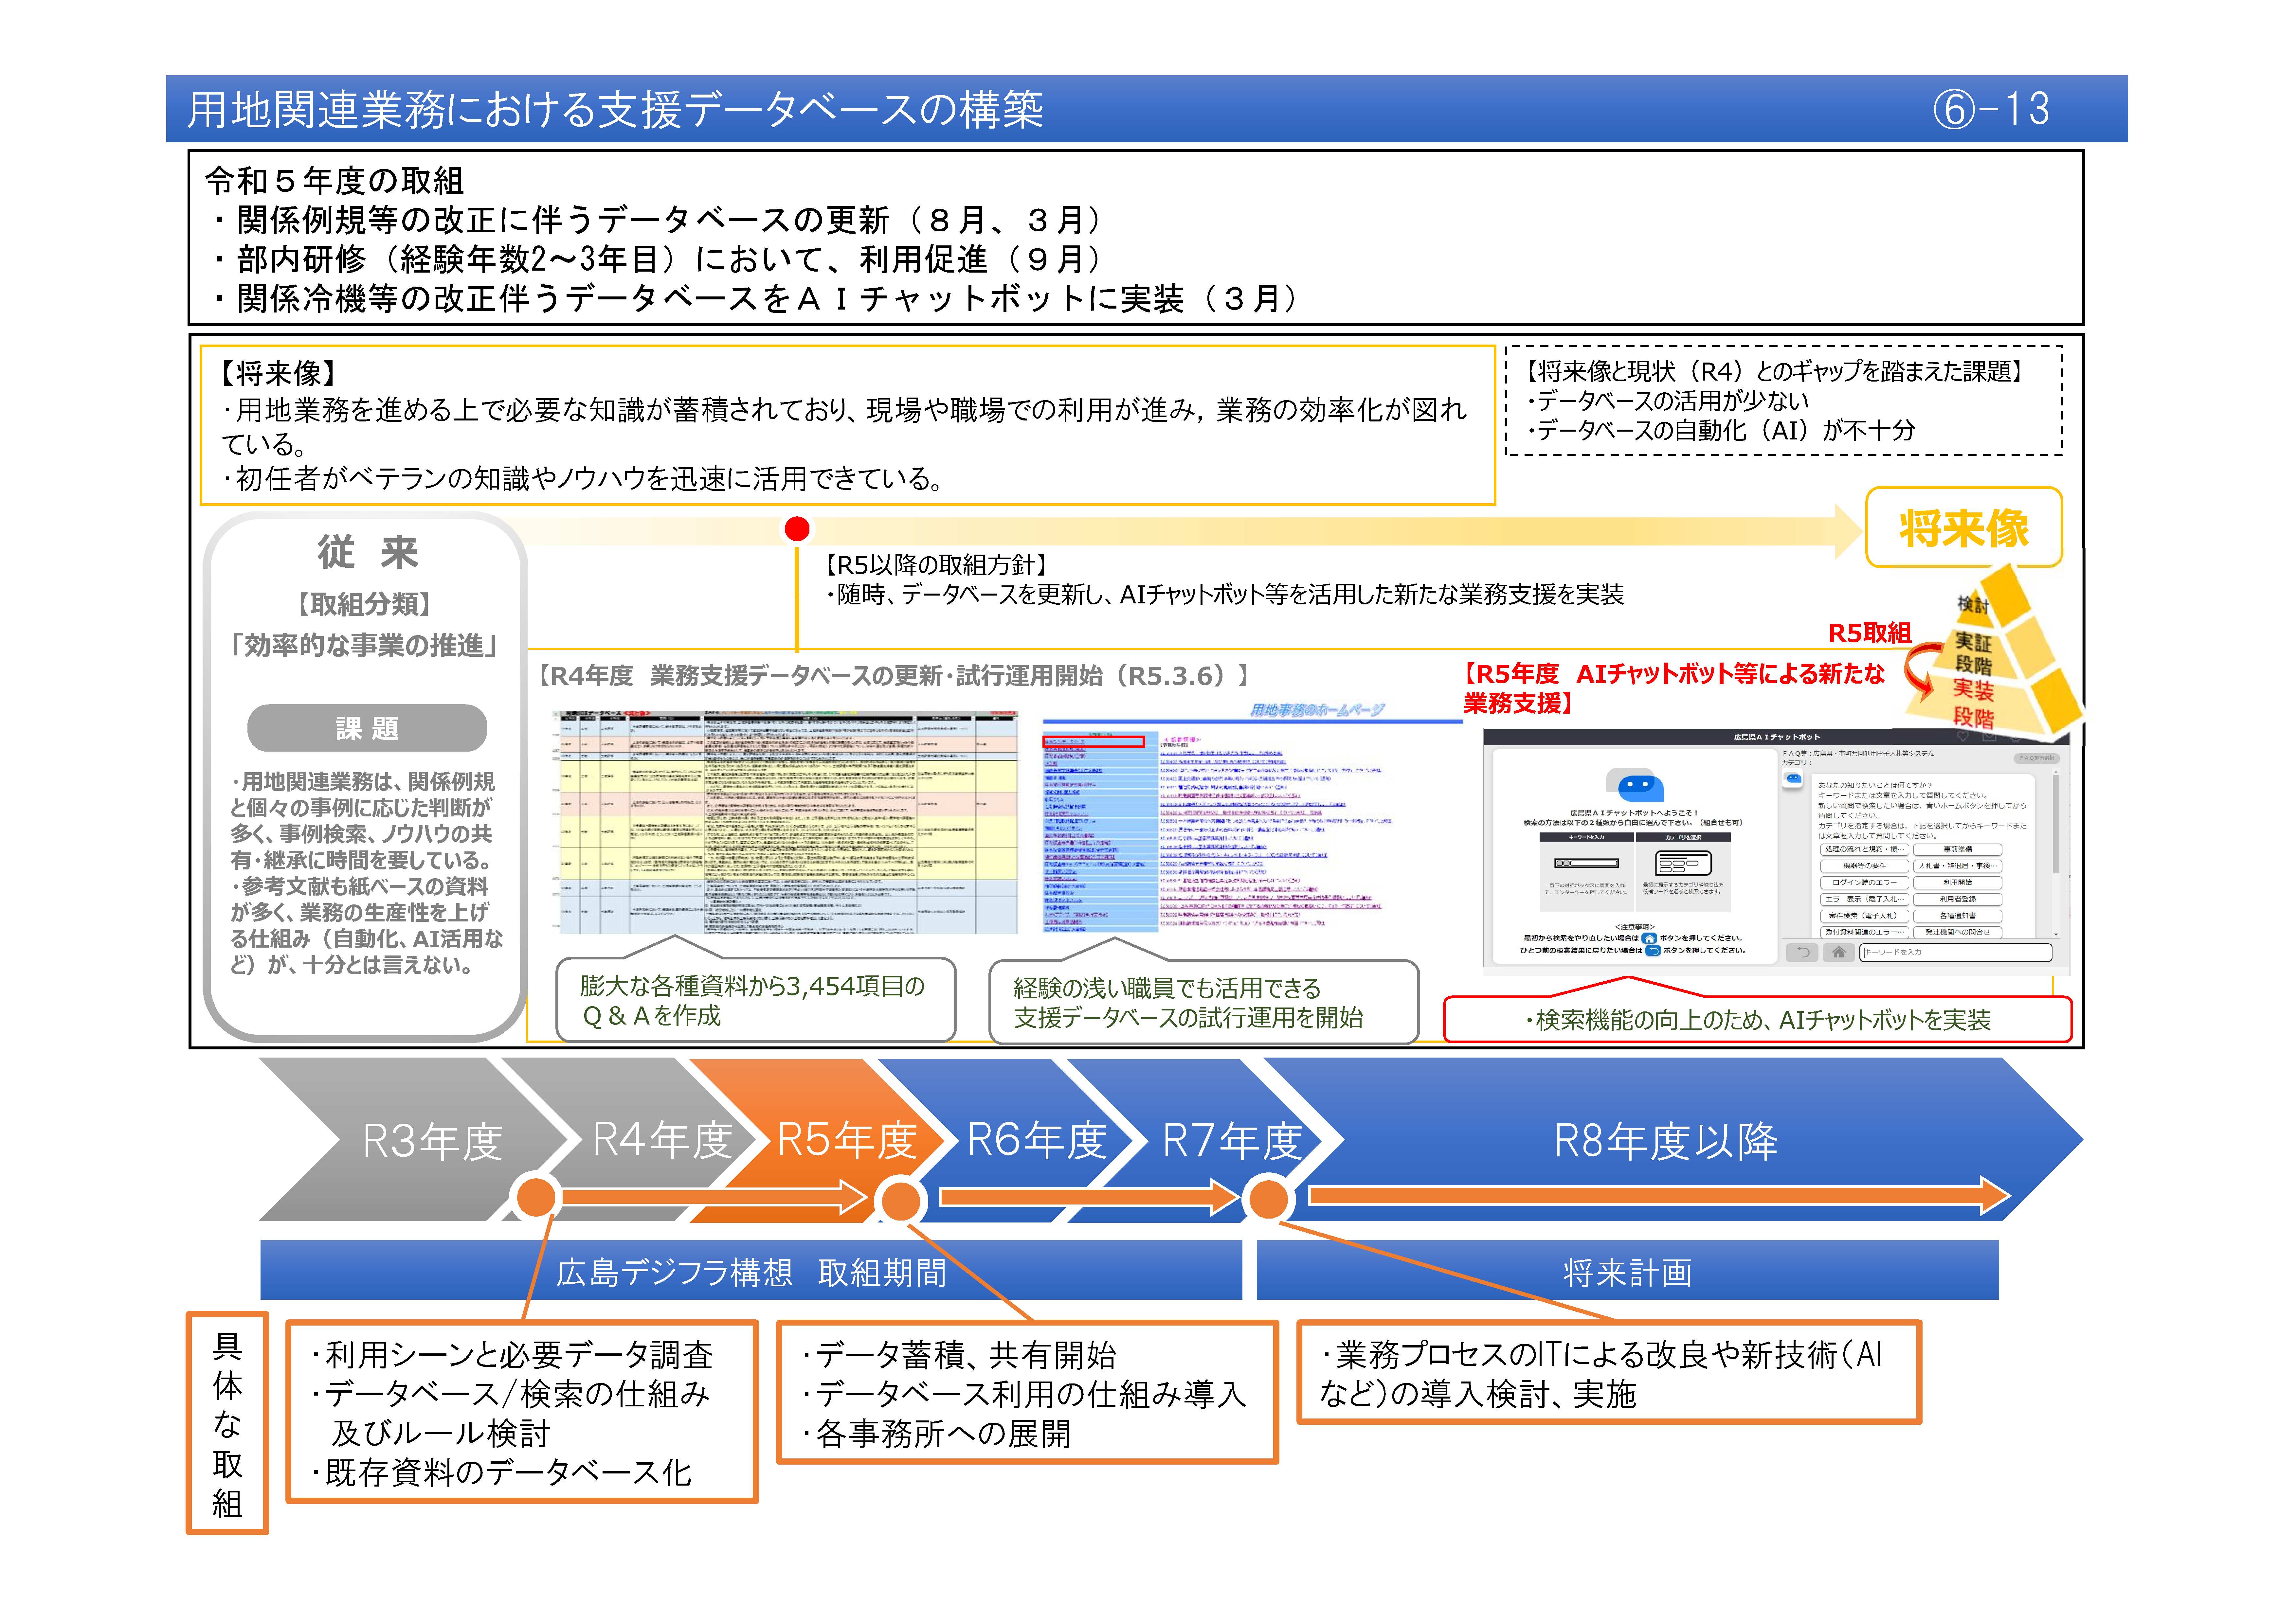 【(6)-13】用地関連業務における支援データベースの構築